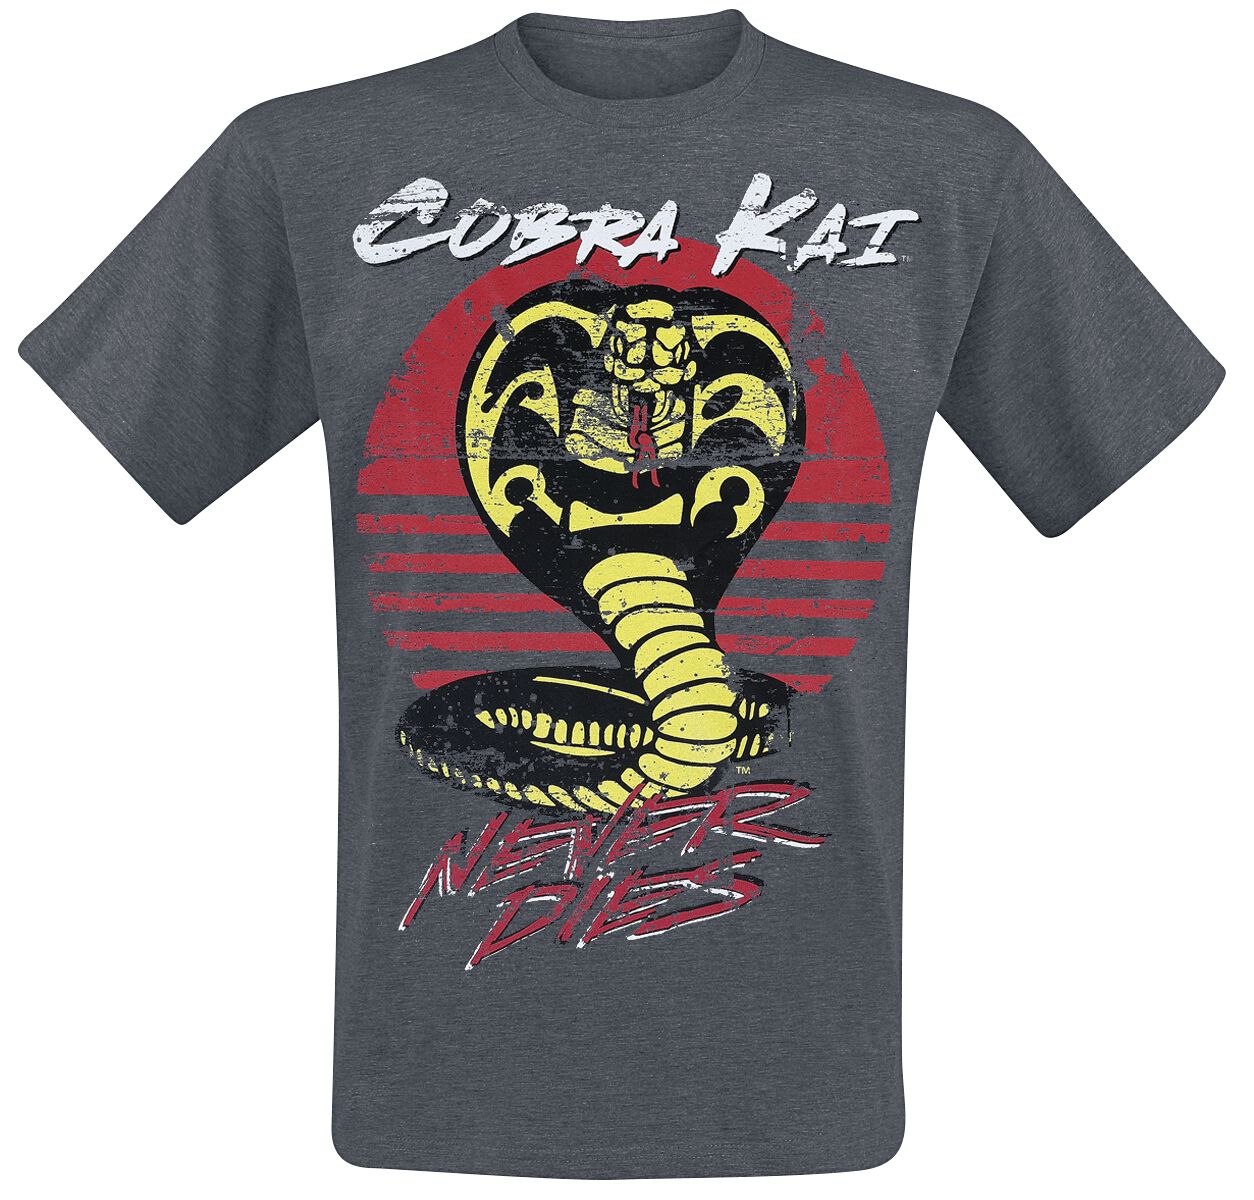 Cobra Kai T-Shirt - Never Dies! - M bis XXL - für Männer - Größe M - grau  - Lizenzierter Fanartikel